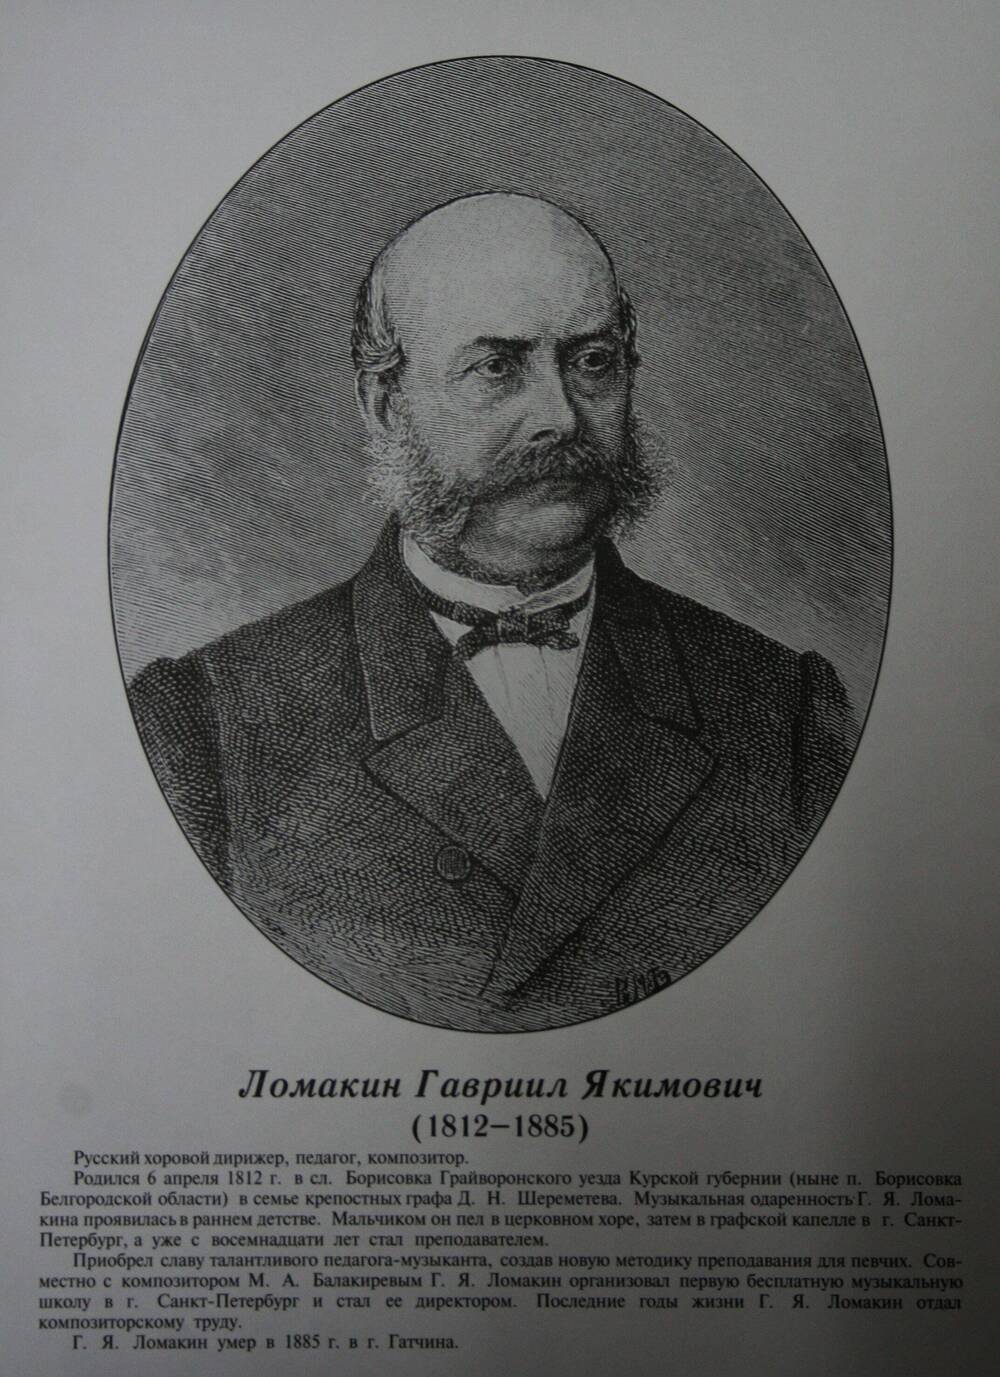 Плакат (фотопортрет) из комплекта Галерея славных имен Белгородчины. Ломакин Гавриил Якимович (1812-1885).